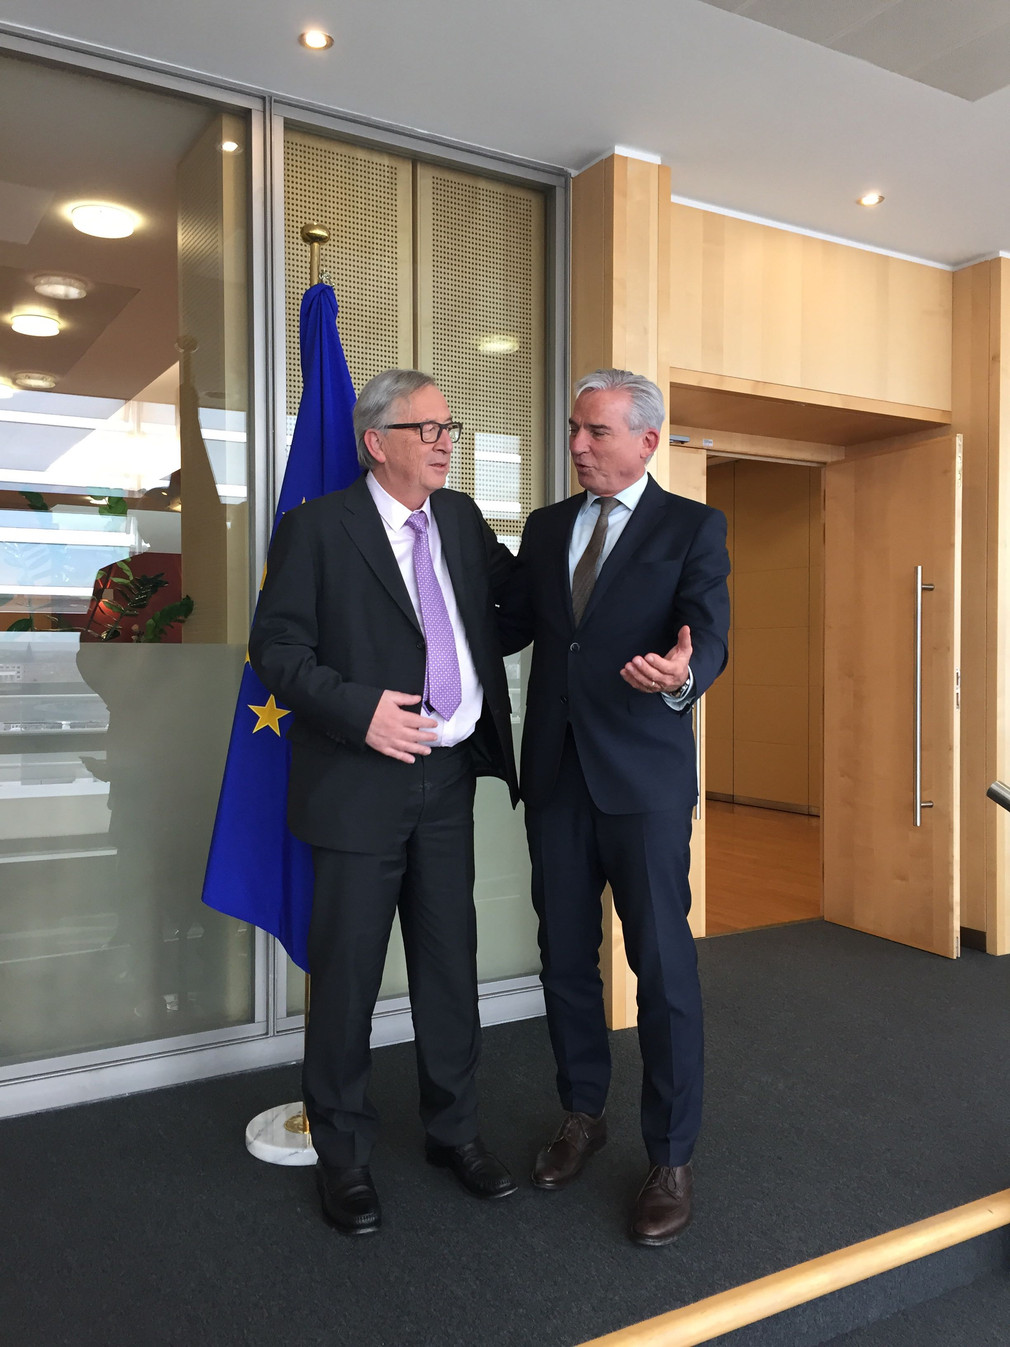 Der Stellvertretende Ministerpräsident Thomas Strobl zu Besuch bei EU-Kommissions-Präsident Jean-Claude Juncker